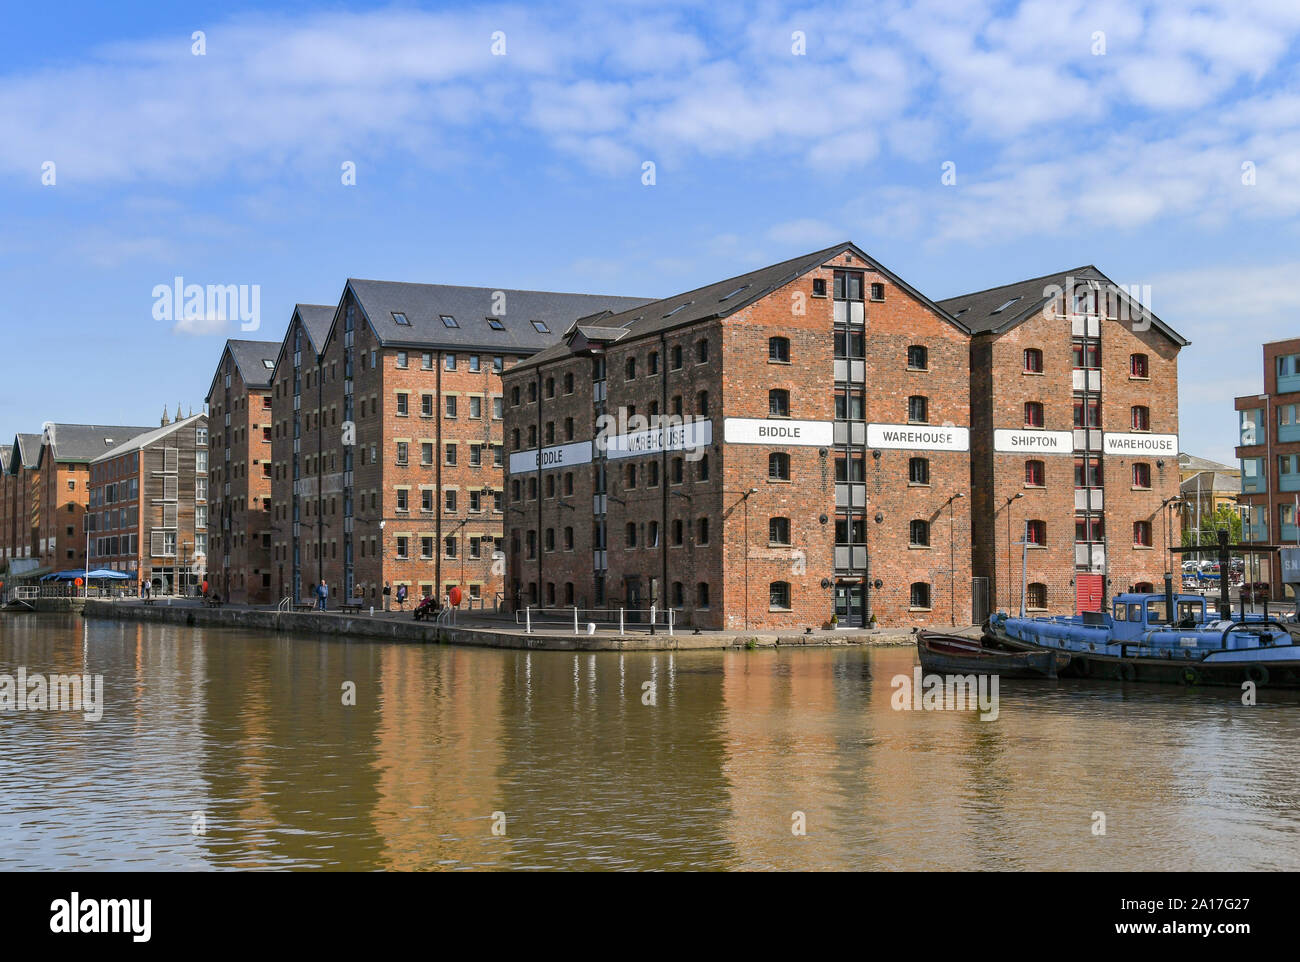 GLOUCESTER QUAYS, Inghilterra - Settembre 2019: imbarcazione attraccata al fianco di nuovi appartamenti in rigenerata ex docks in Gloucester Quays. Foto Stock